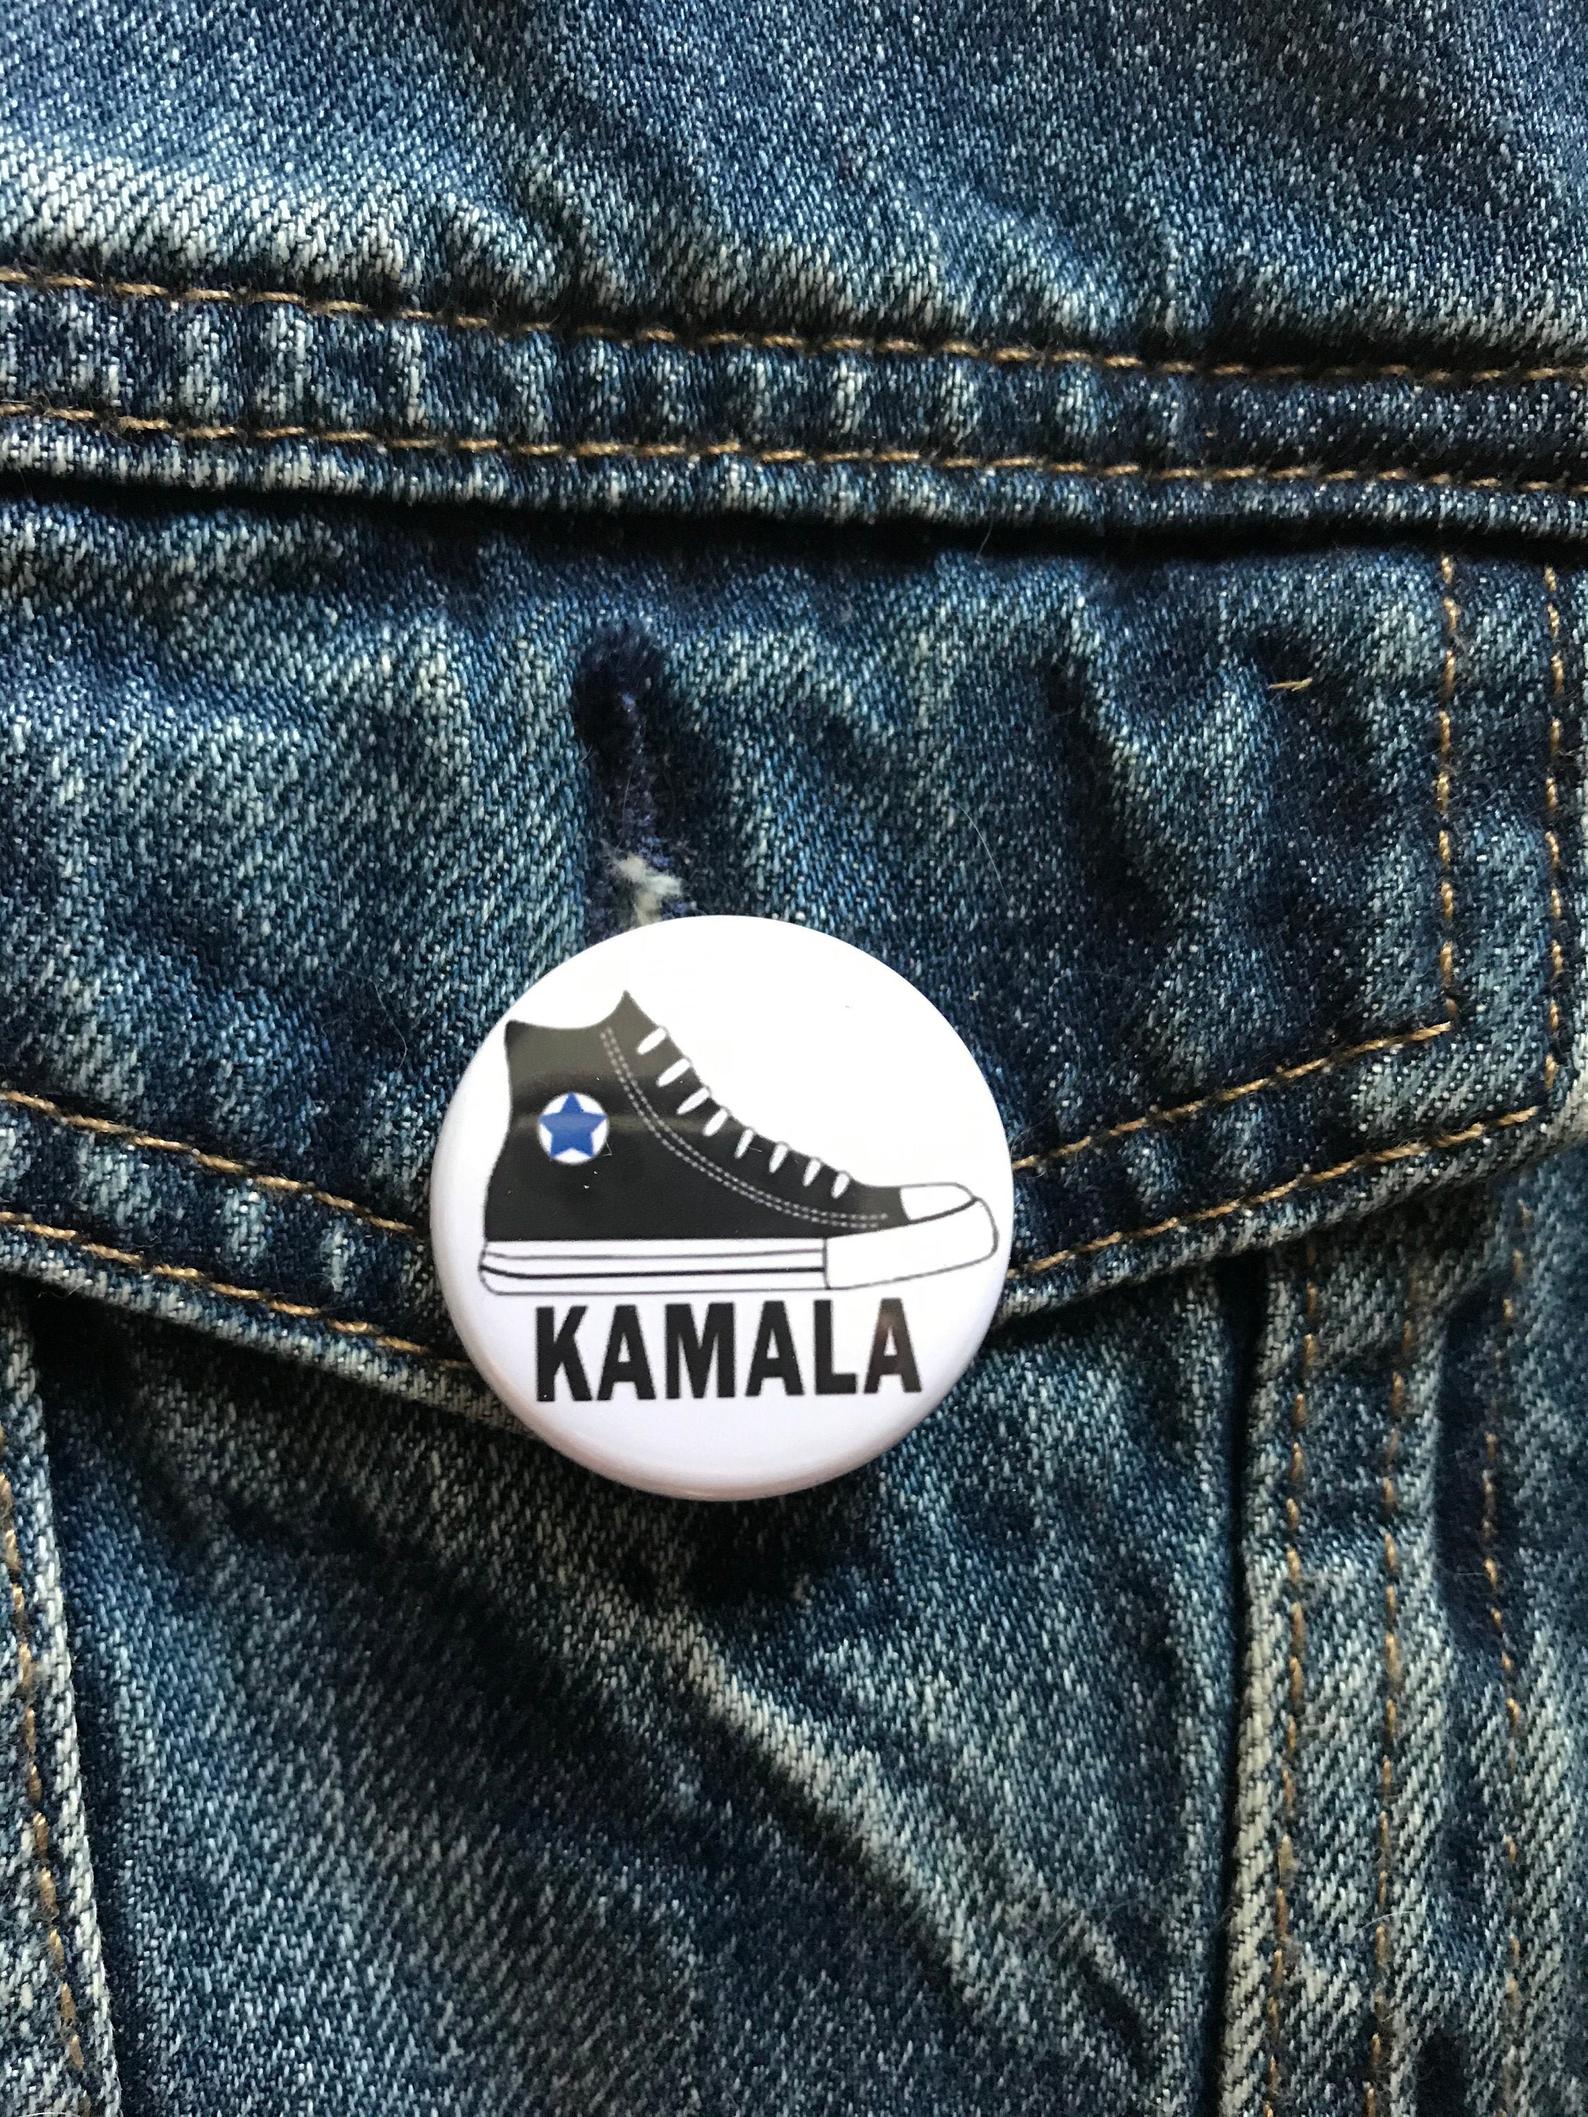 Kamala Harris Chucks Pin  Button